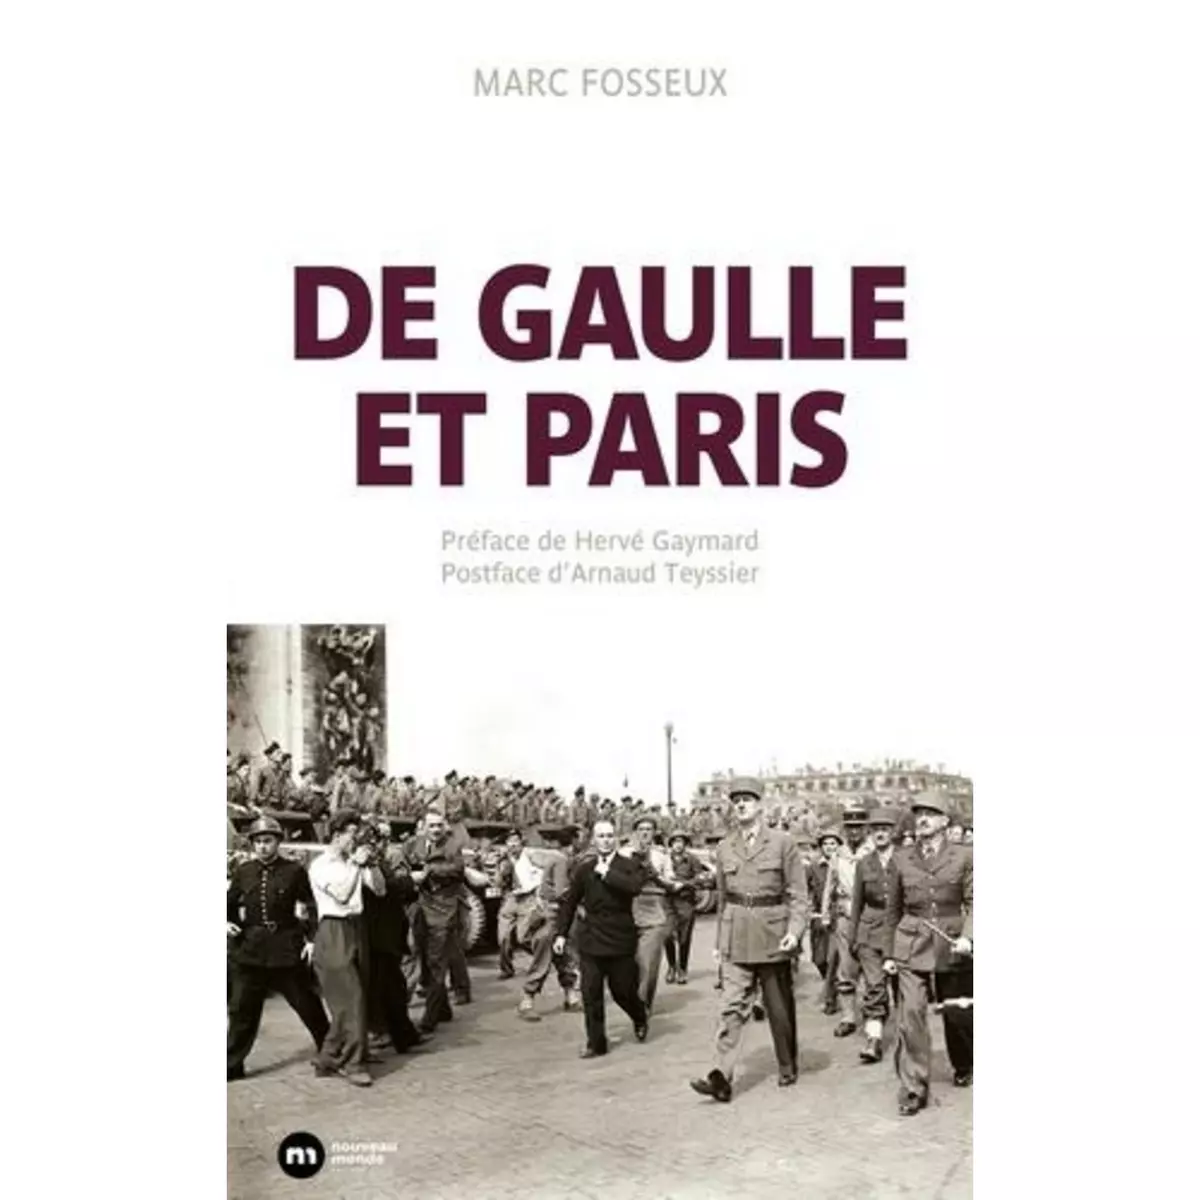  DE GAULLE ET PARIS, Fosseux Marc